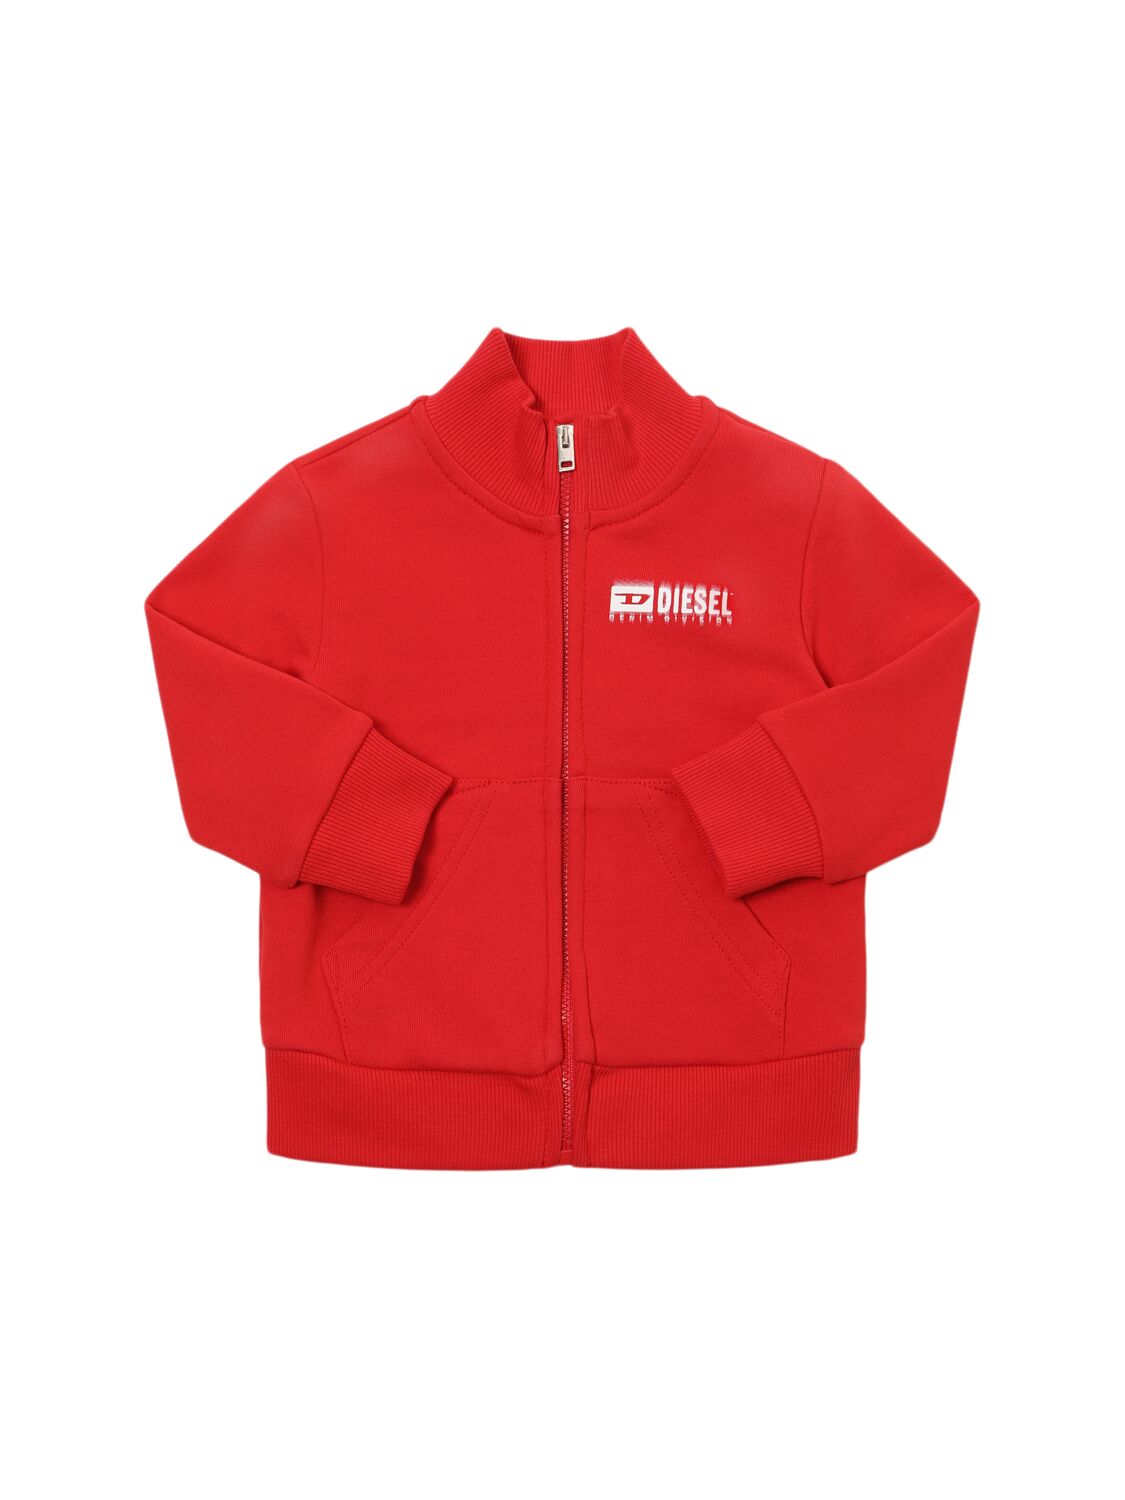 Diesel Kids' Cotton Zip-up Sweatshirt W/logo In Red